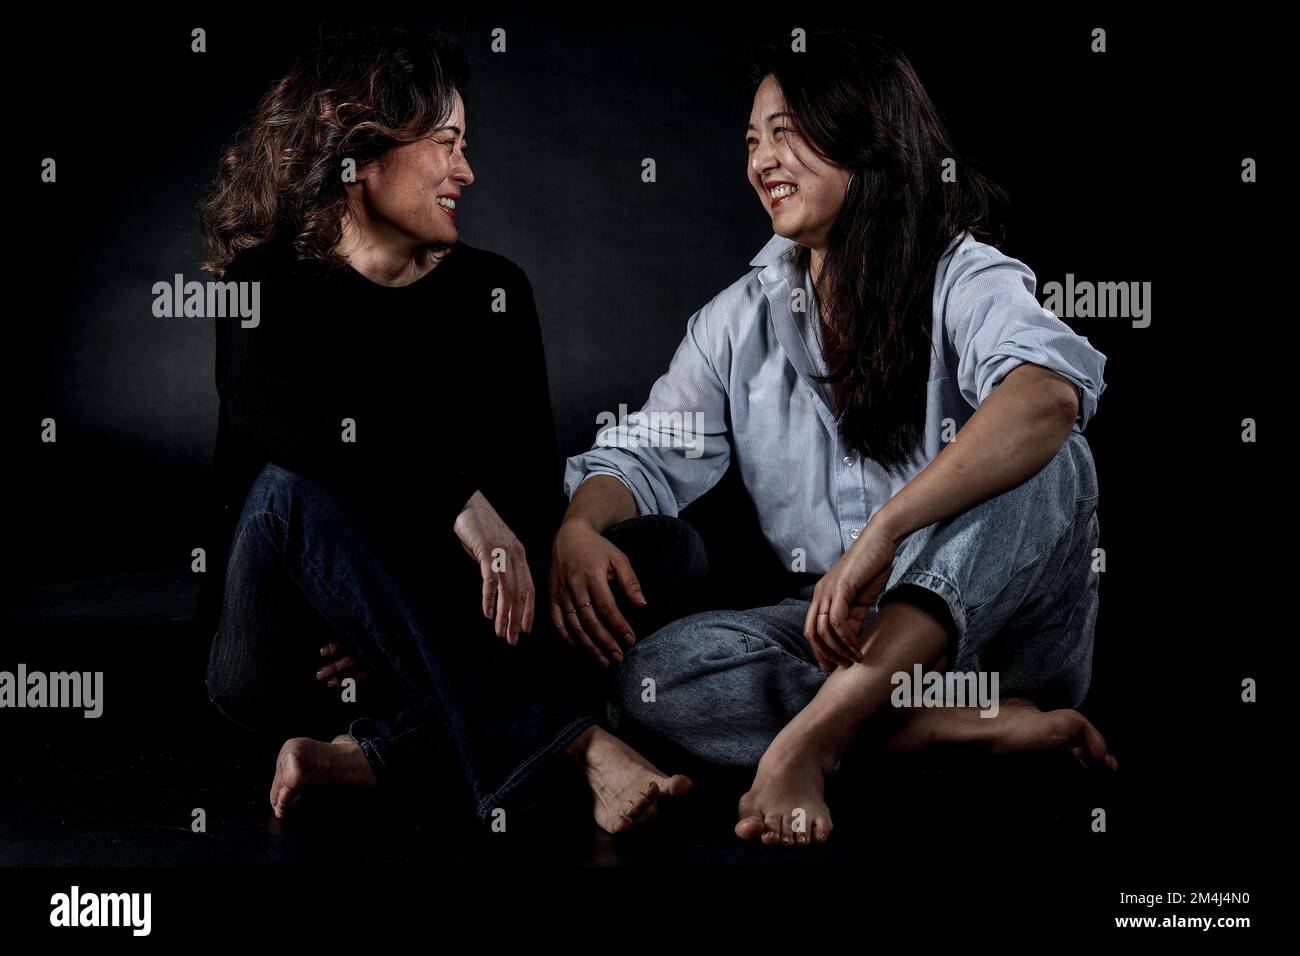 Deux femmes asiatiques assises, sœurs, sœurs coréennes Banque D'Images